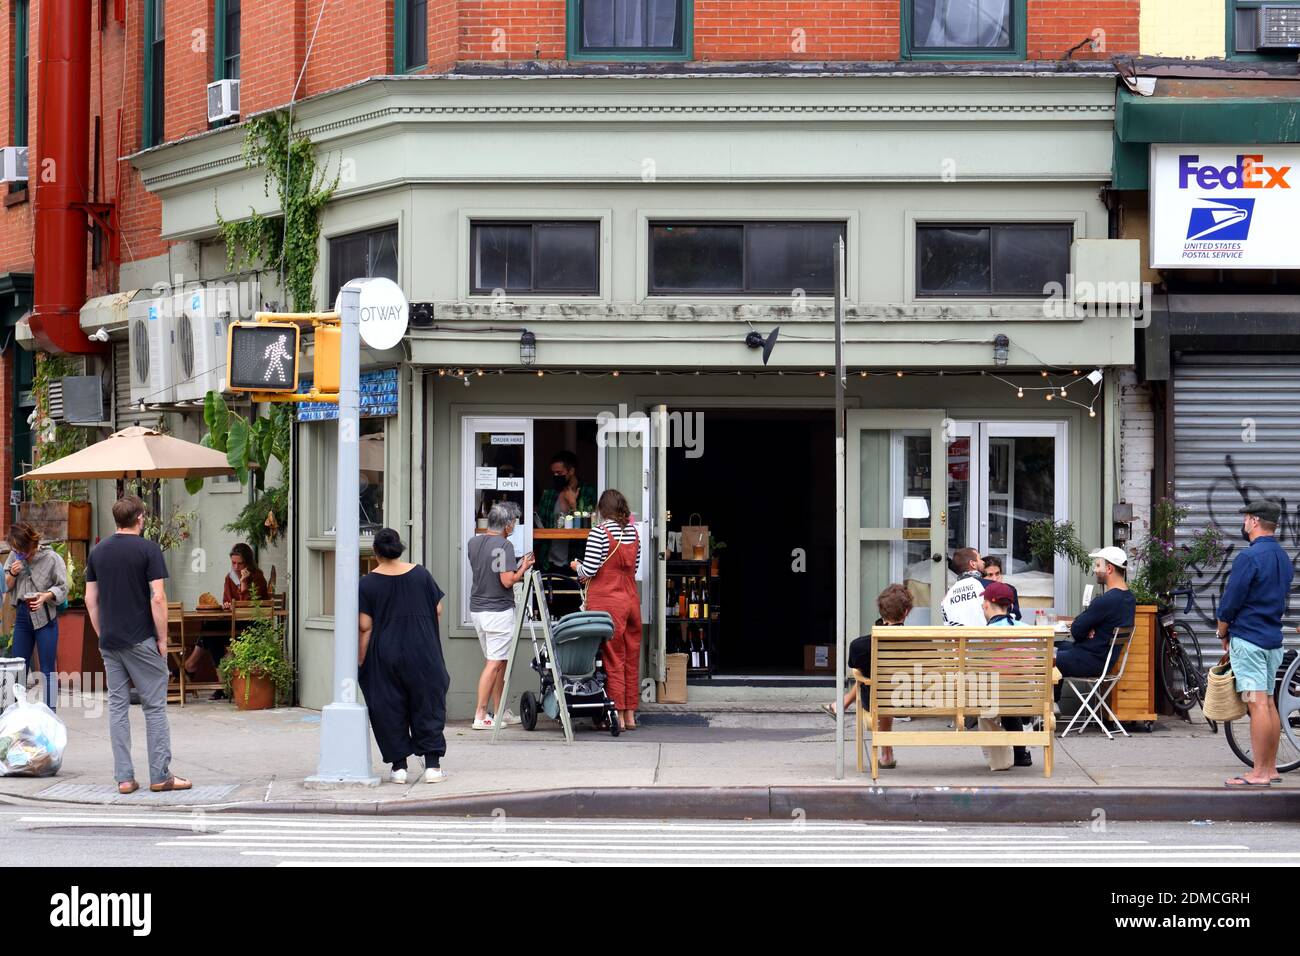 Otway, 930 Fulton Street, Brooklyn, New York. Foto von einem Restaurant im Stadtteil Clinton Hill in NYC. Stockfoto